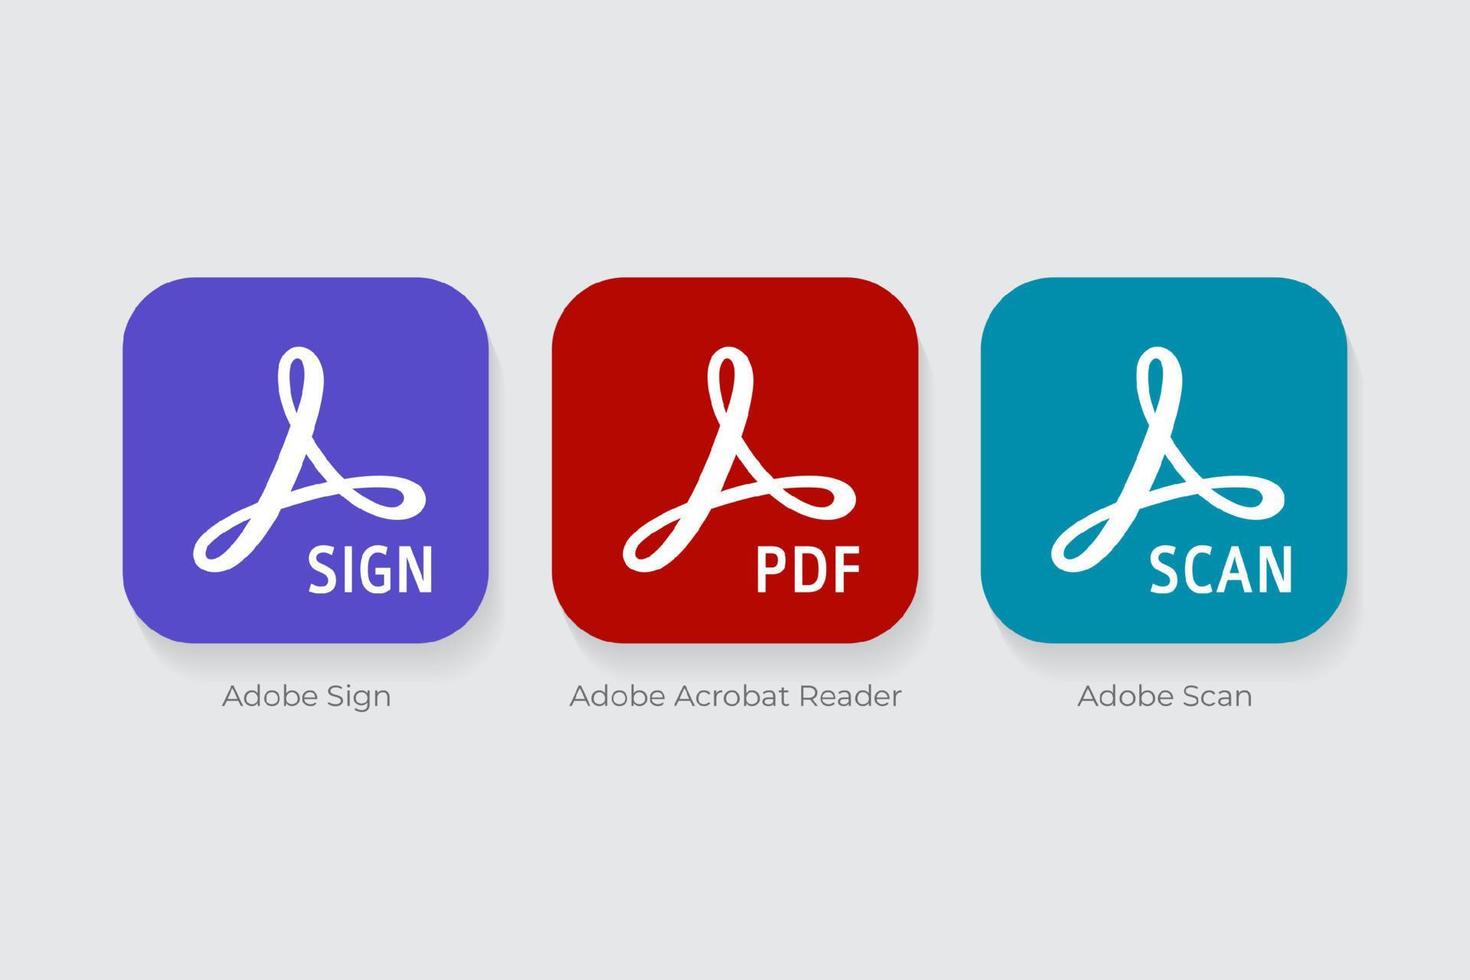 Adobe Sign, Adobe Acrobat Reader, Adobe Scan logos vector